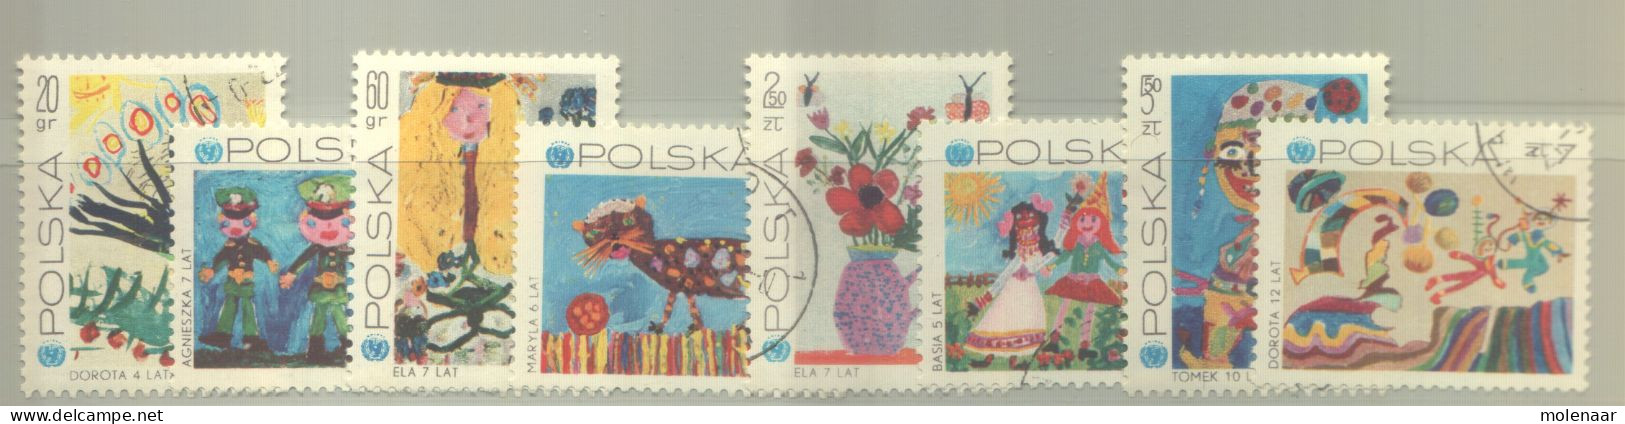 Postzegels > Europa > Polen > 1944-.... Republiek > 1981-90 > Gebruikt 2075-2082 (12193) - Usados